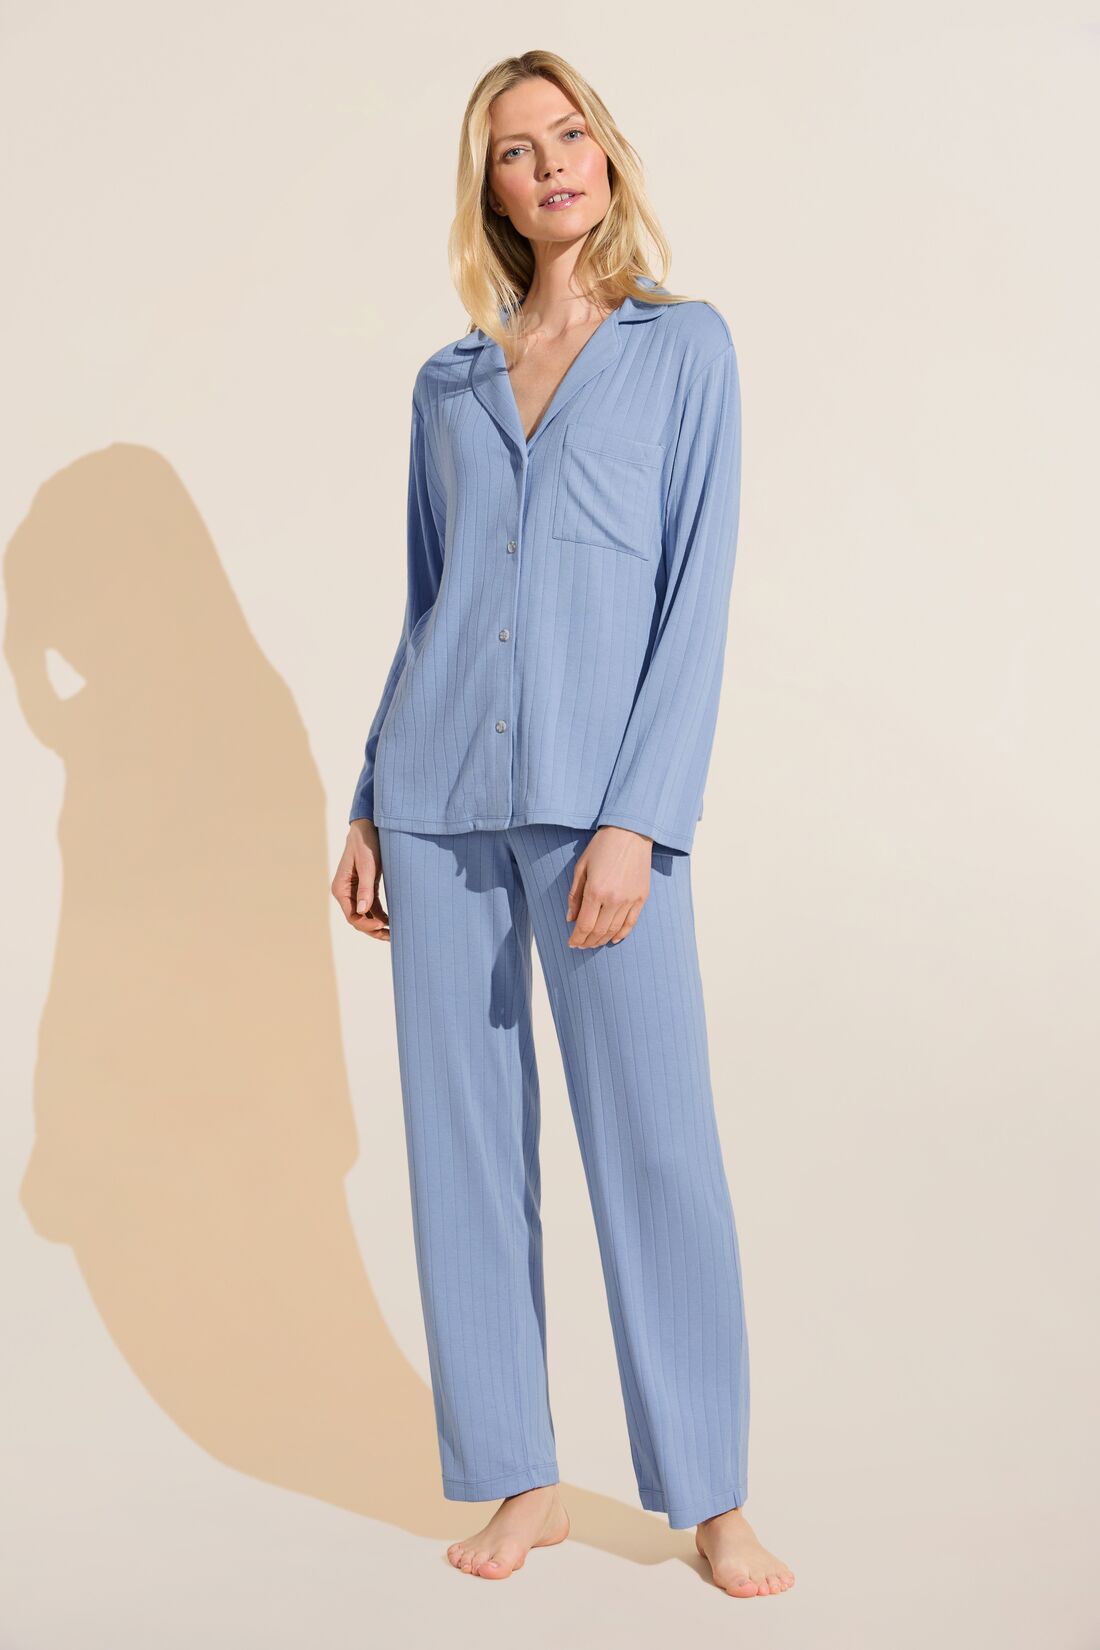 New Arrivals - Pajamas, Sleepwear & Loungewear - Eberjey